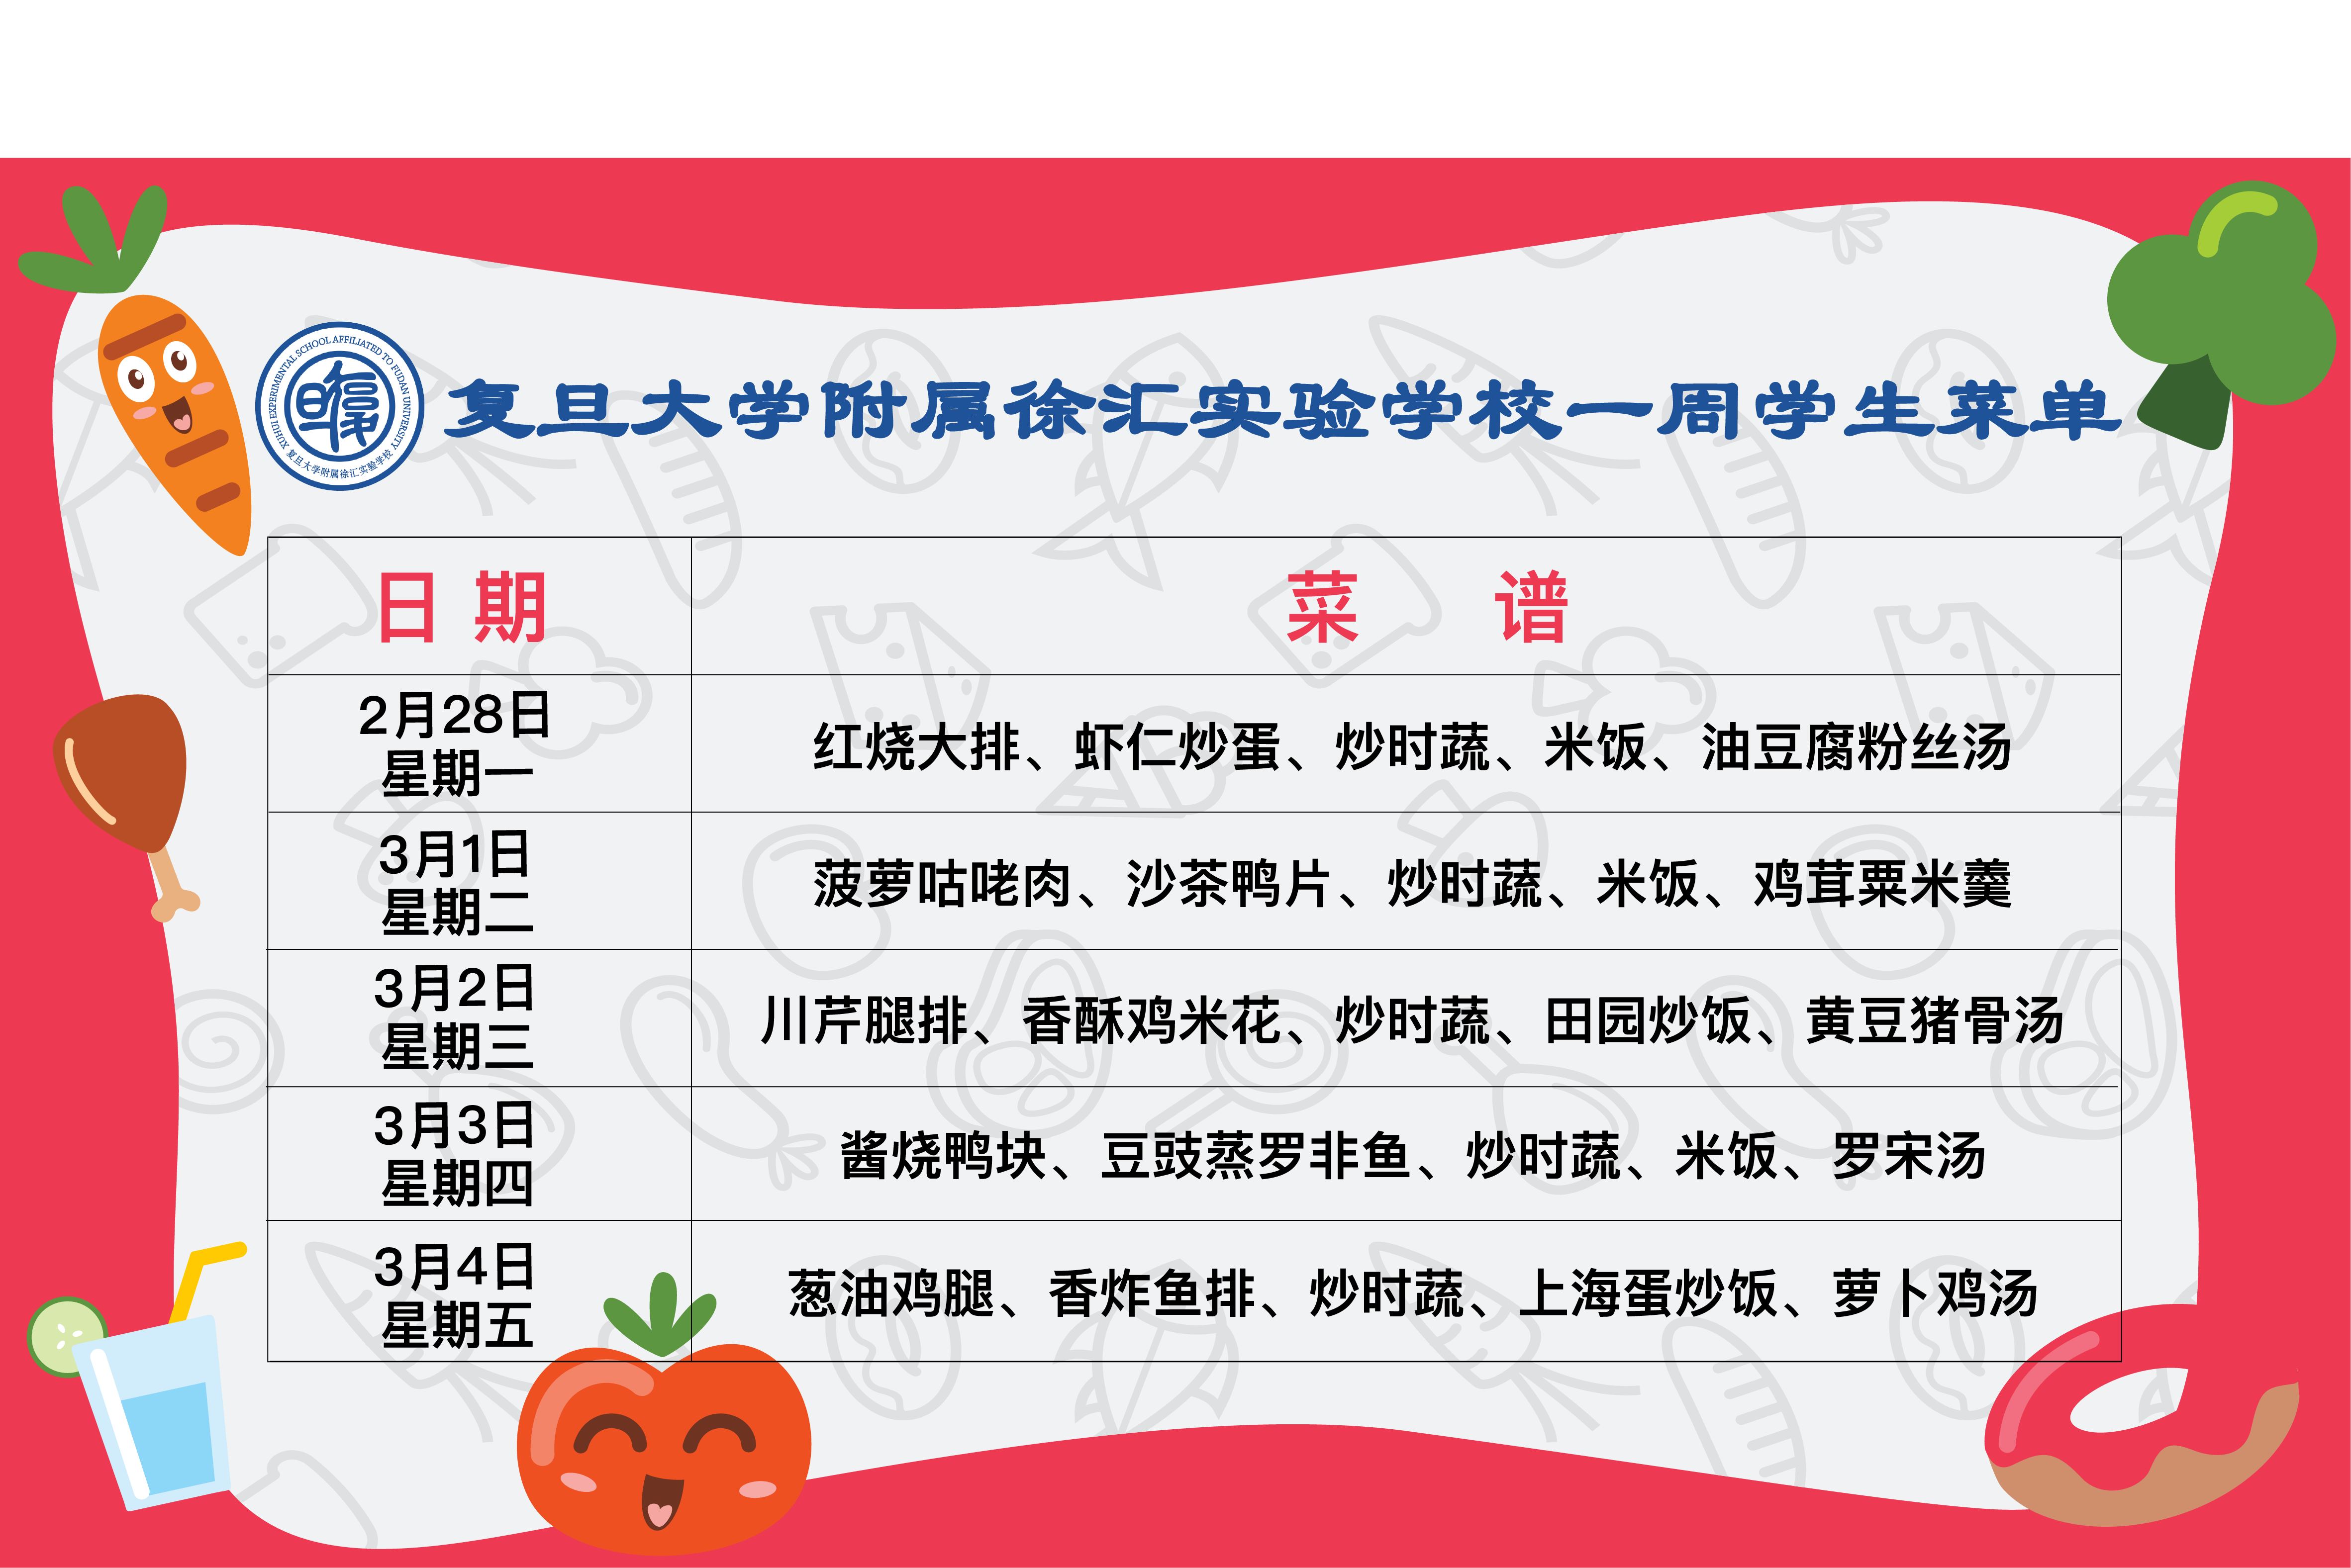 徐州市第一中学食堂负一楼学生餐厅量化菜谱公示(202106)-徐州市第一中学